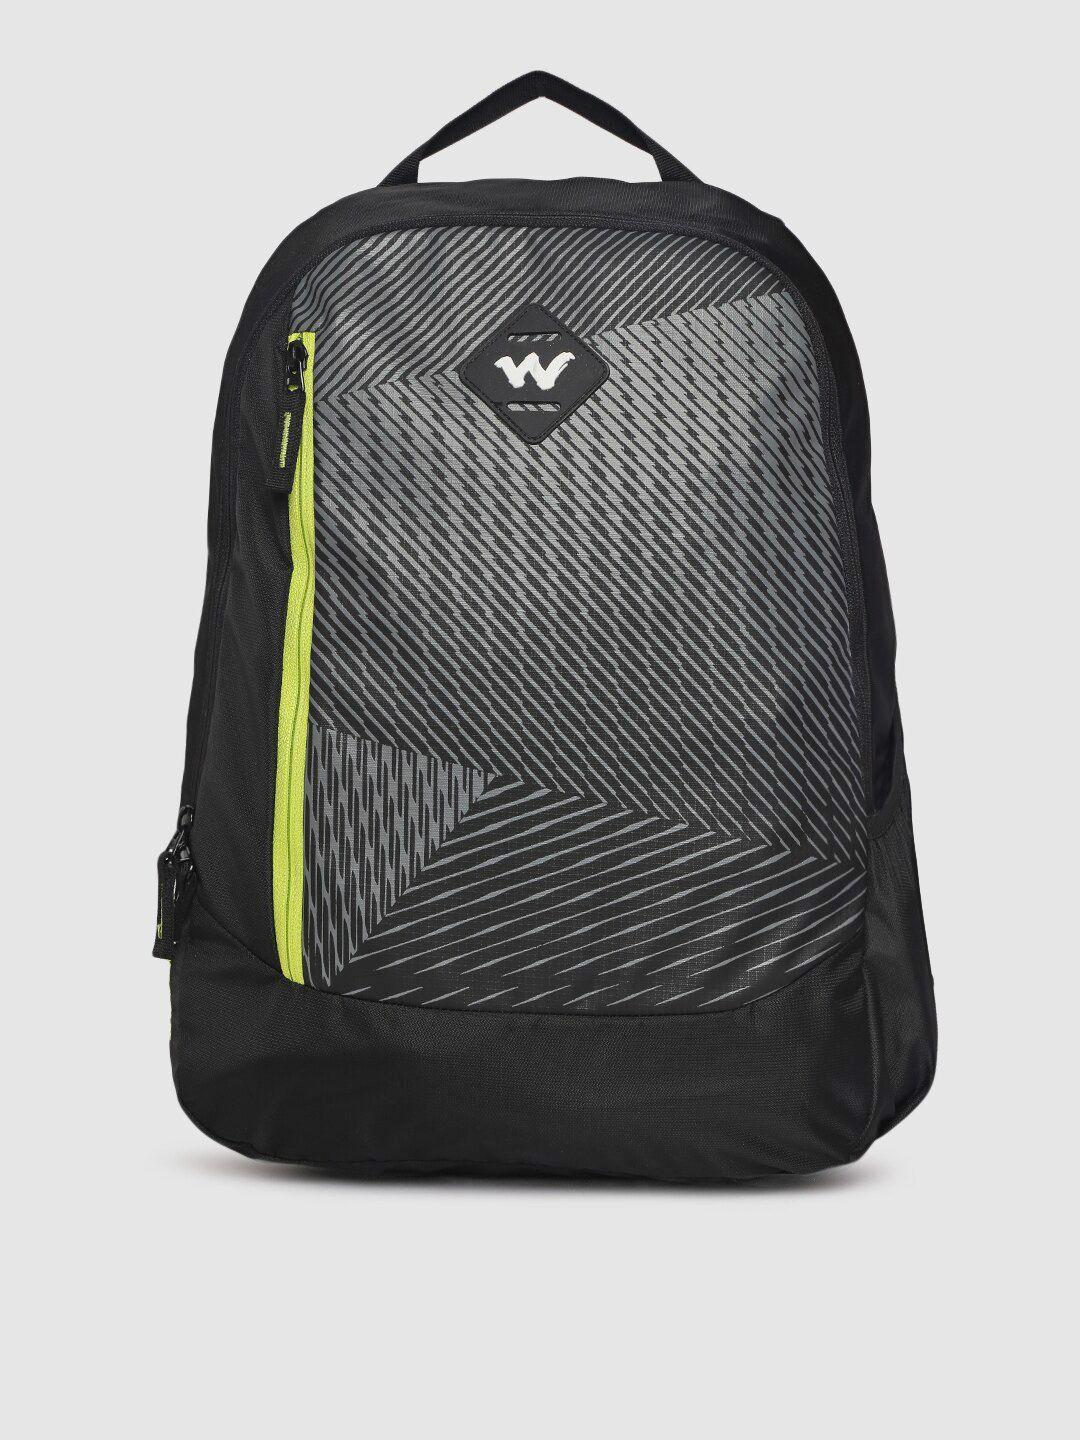 wildcraft unisex black printed backpack